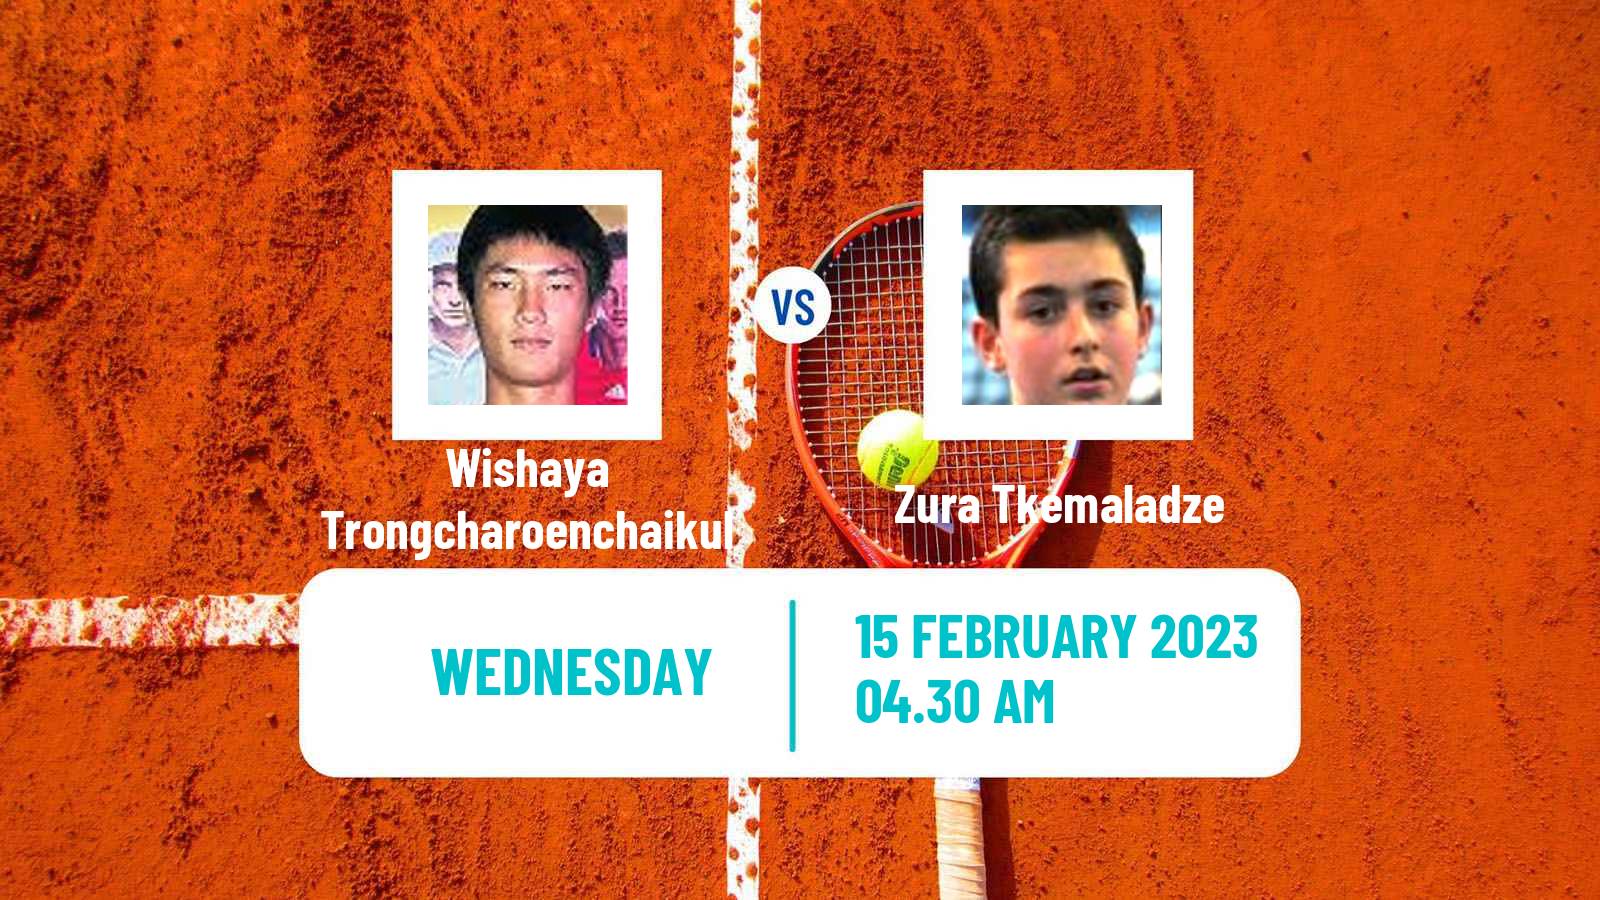 Tennis ITF Tournaments Wishaya Trongcharoenchaikul - Zura Tkemaladze